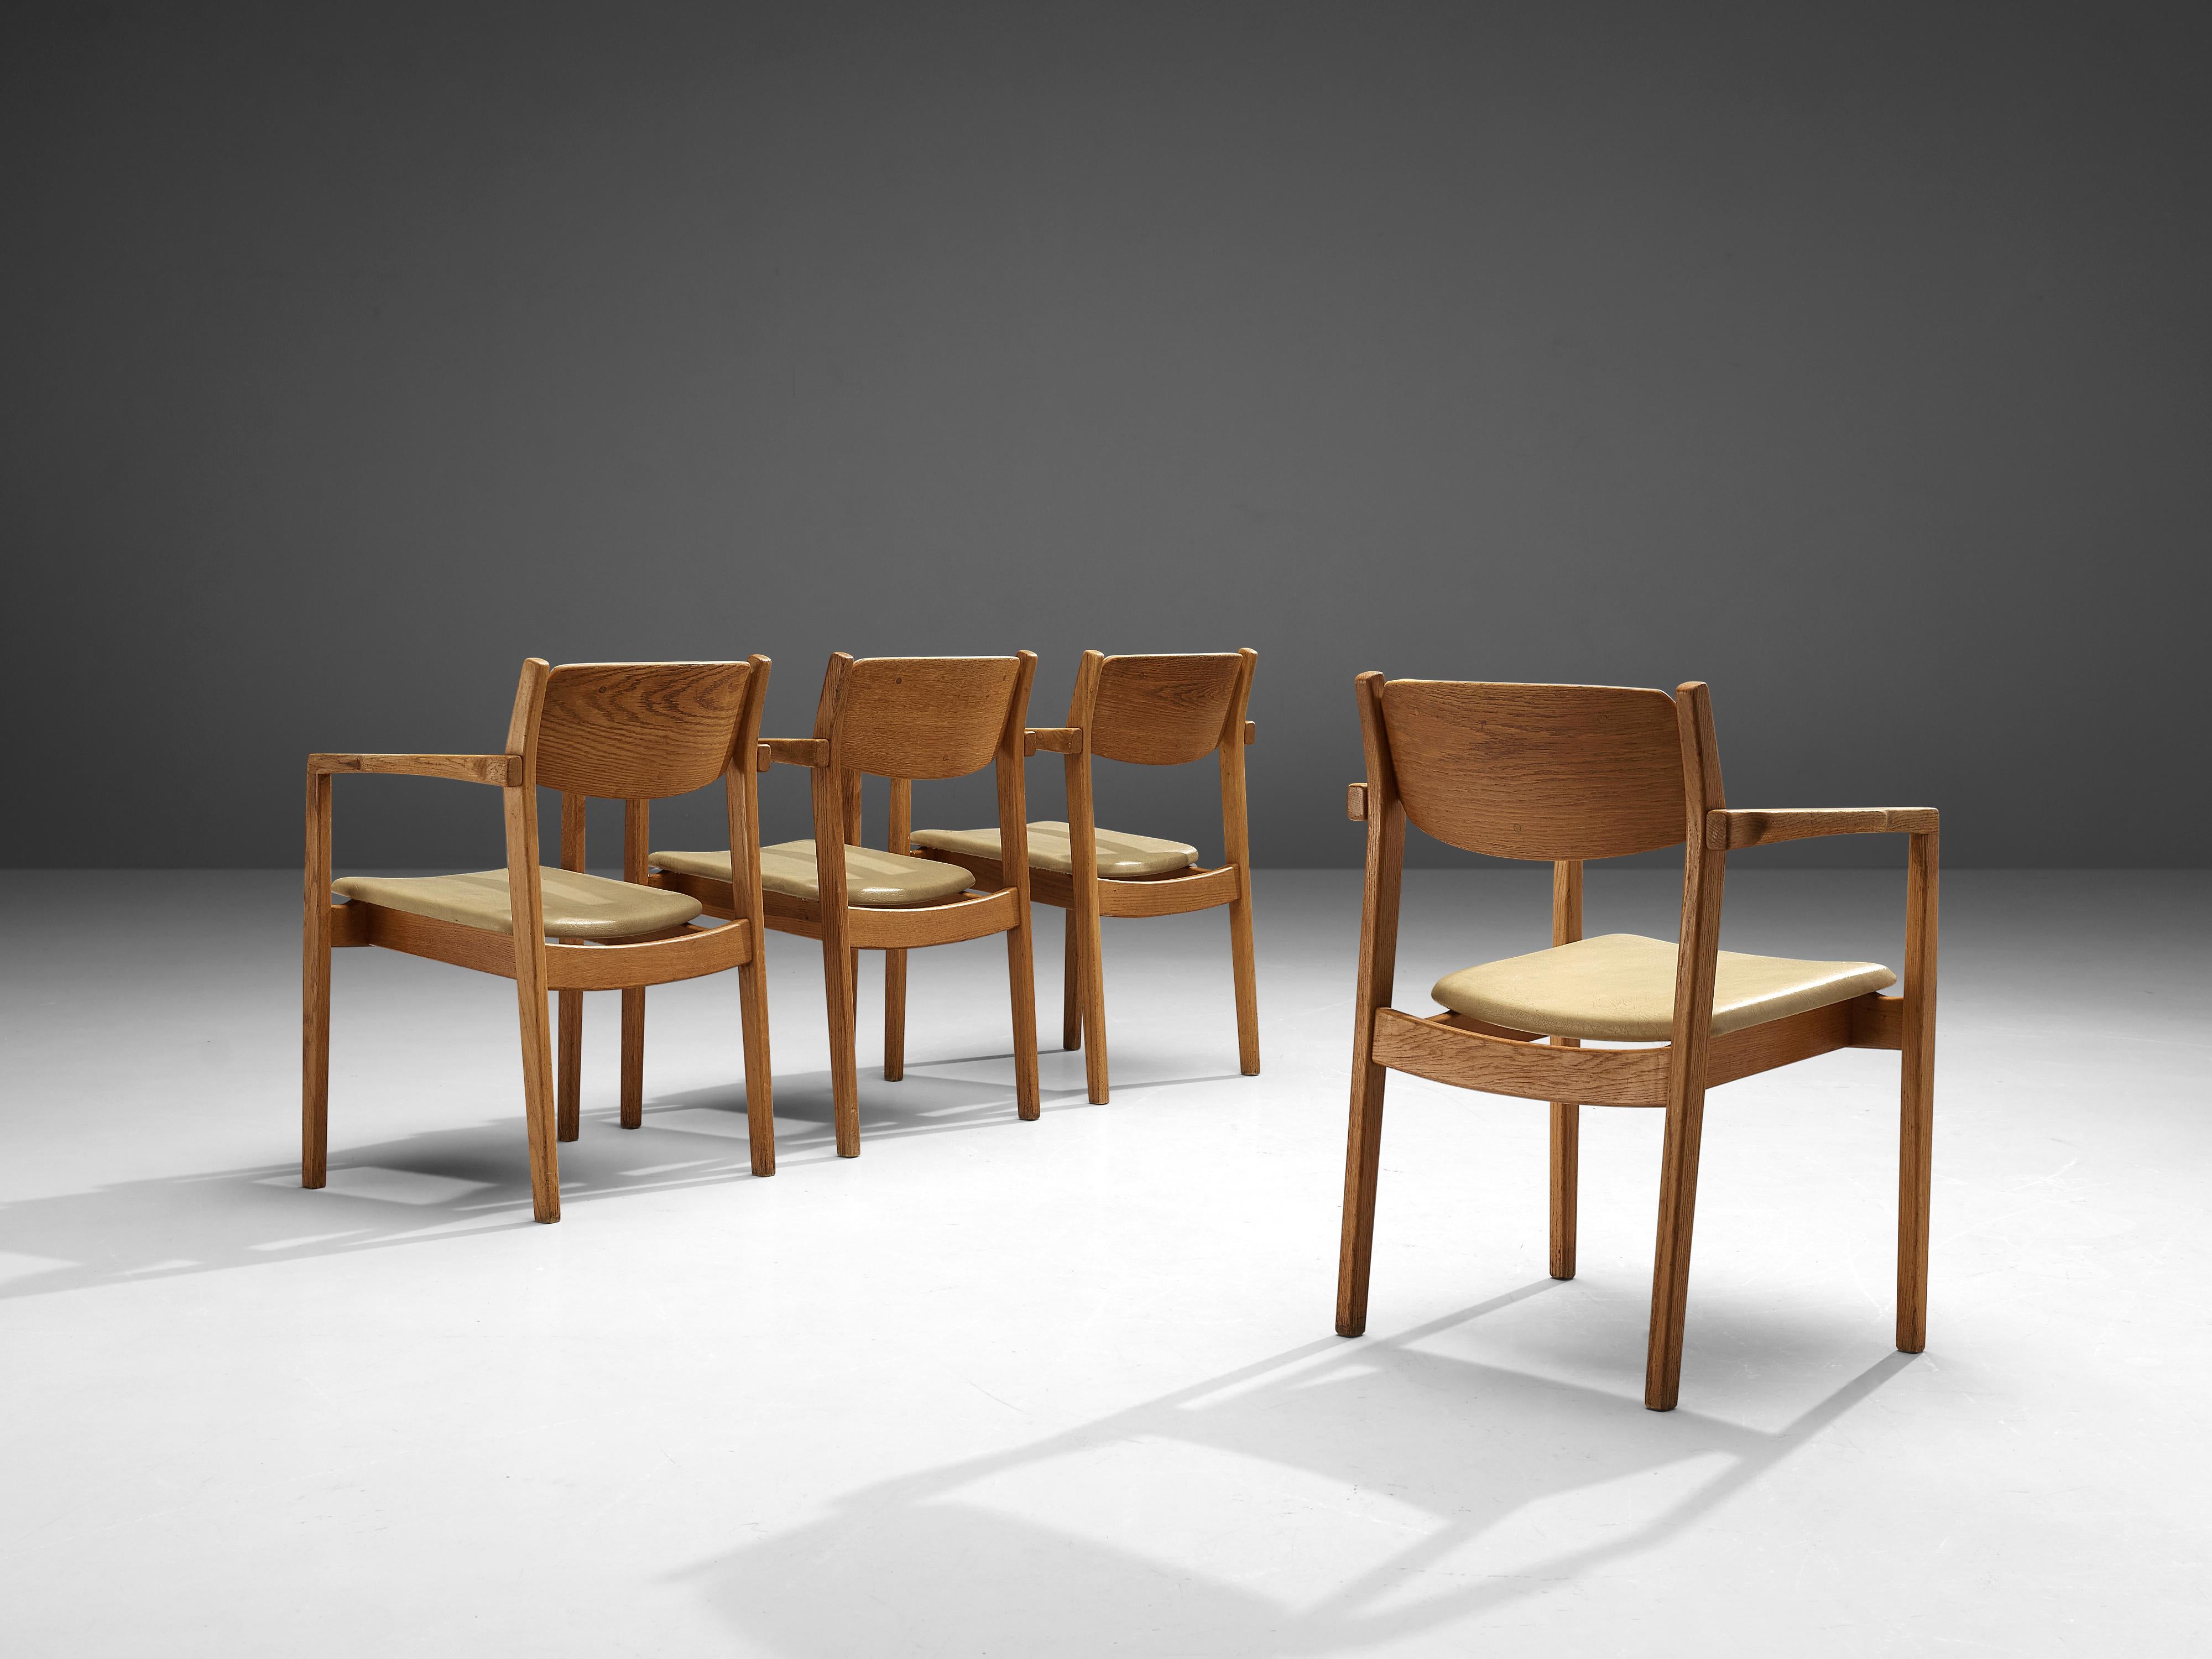 Ensemble de quatre fauteuils, chêne, similicuir, Danemark, années 1960

Ensemble de quatre chaises de salle à manger sculptées en chêne massif et recouvertes de similicuir. Ces chaises présentent les caractéristiques d'un meuble bien fabriqué. Des